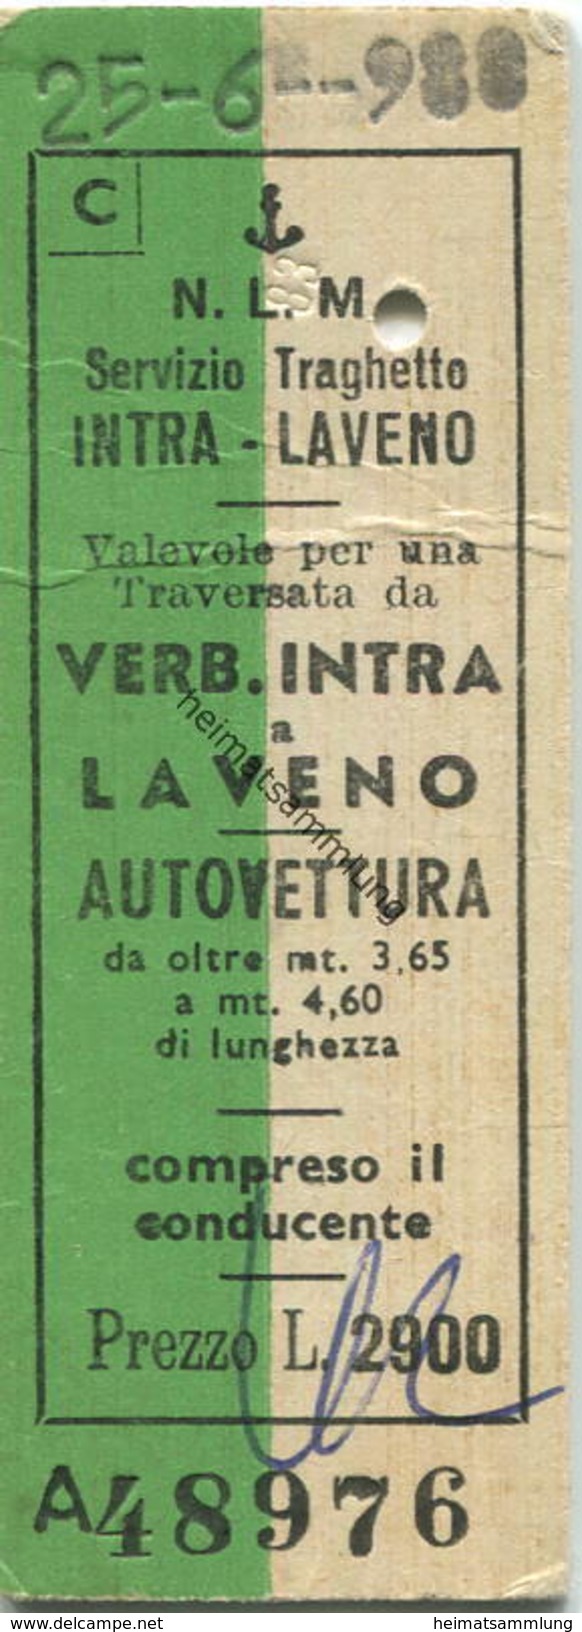 Italien - N.L.M. Navigazione Lago Maggiore - Servizia Traghetto Autovettura - Verb. Intra A Laveno - Fahrkarte L. 2900 1 - Europe